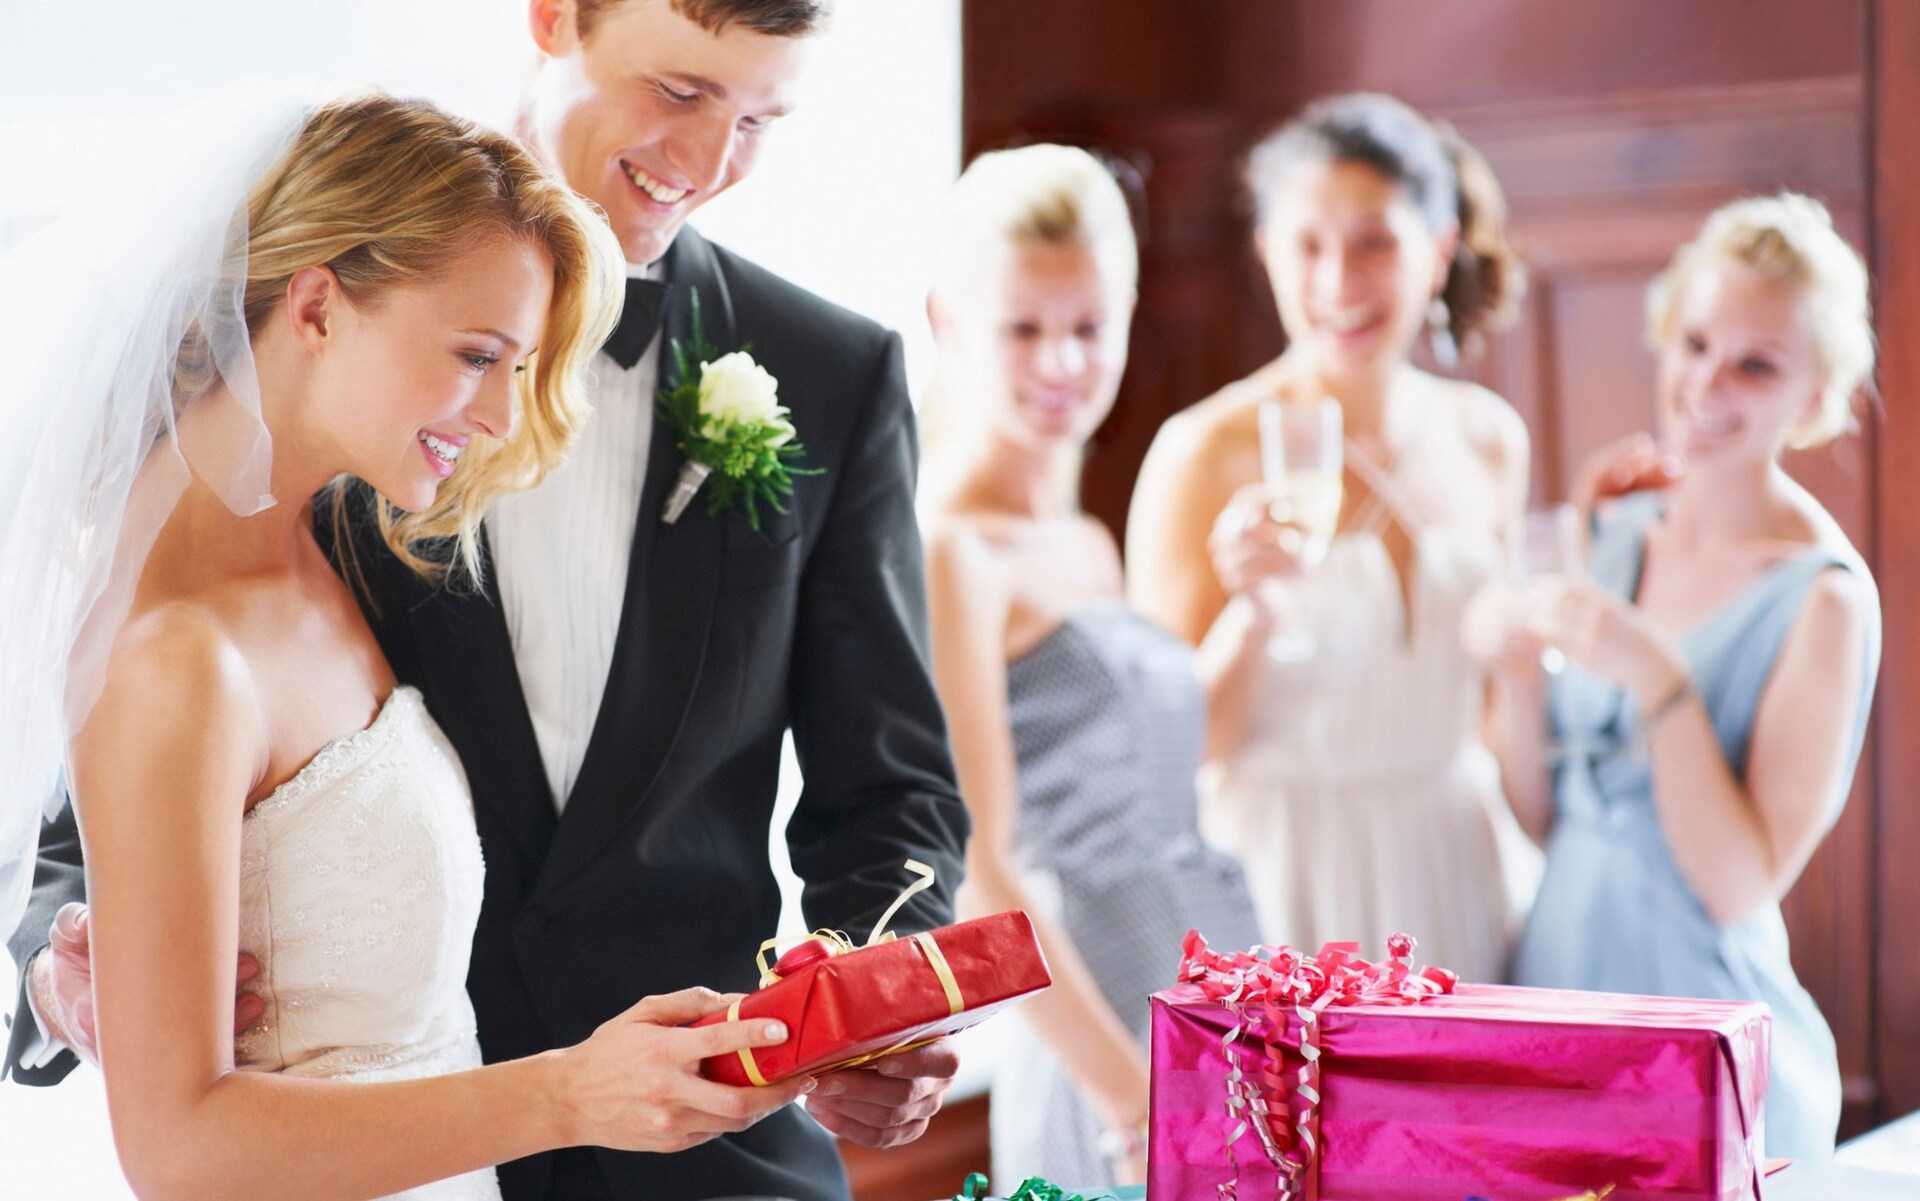 Подарки на свадьбе могут получать не только жених и невеста, но также родители и дорогие гости Принято ли дарить подарки на свадьбе от невесты Какие подарки и кому должна преподнести невеста согласно обычаям и традициям